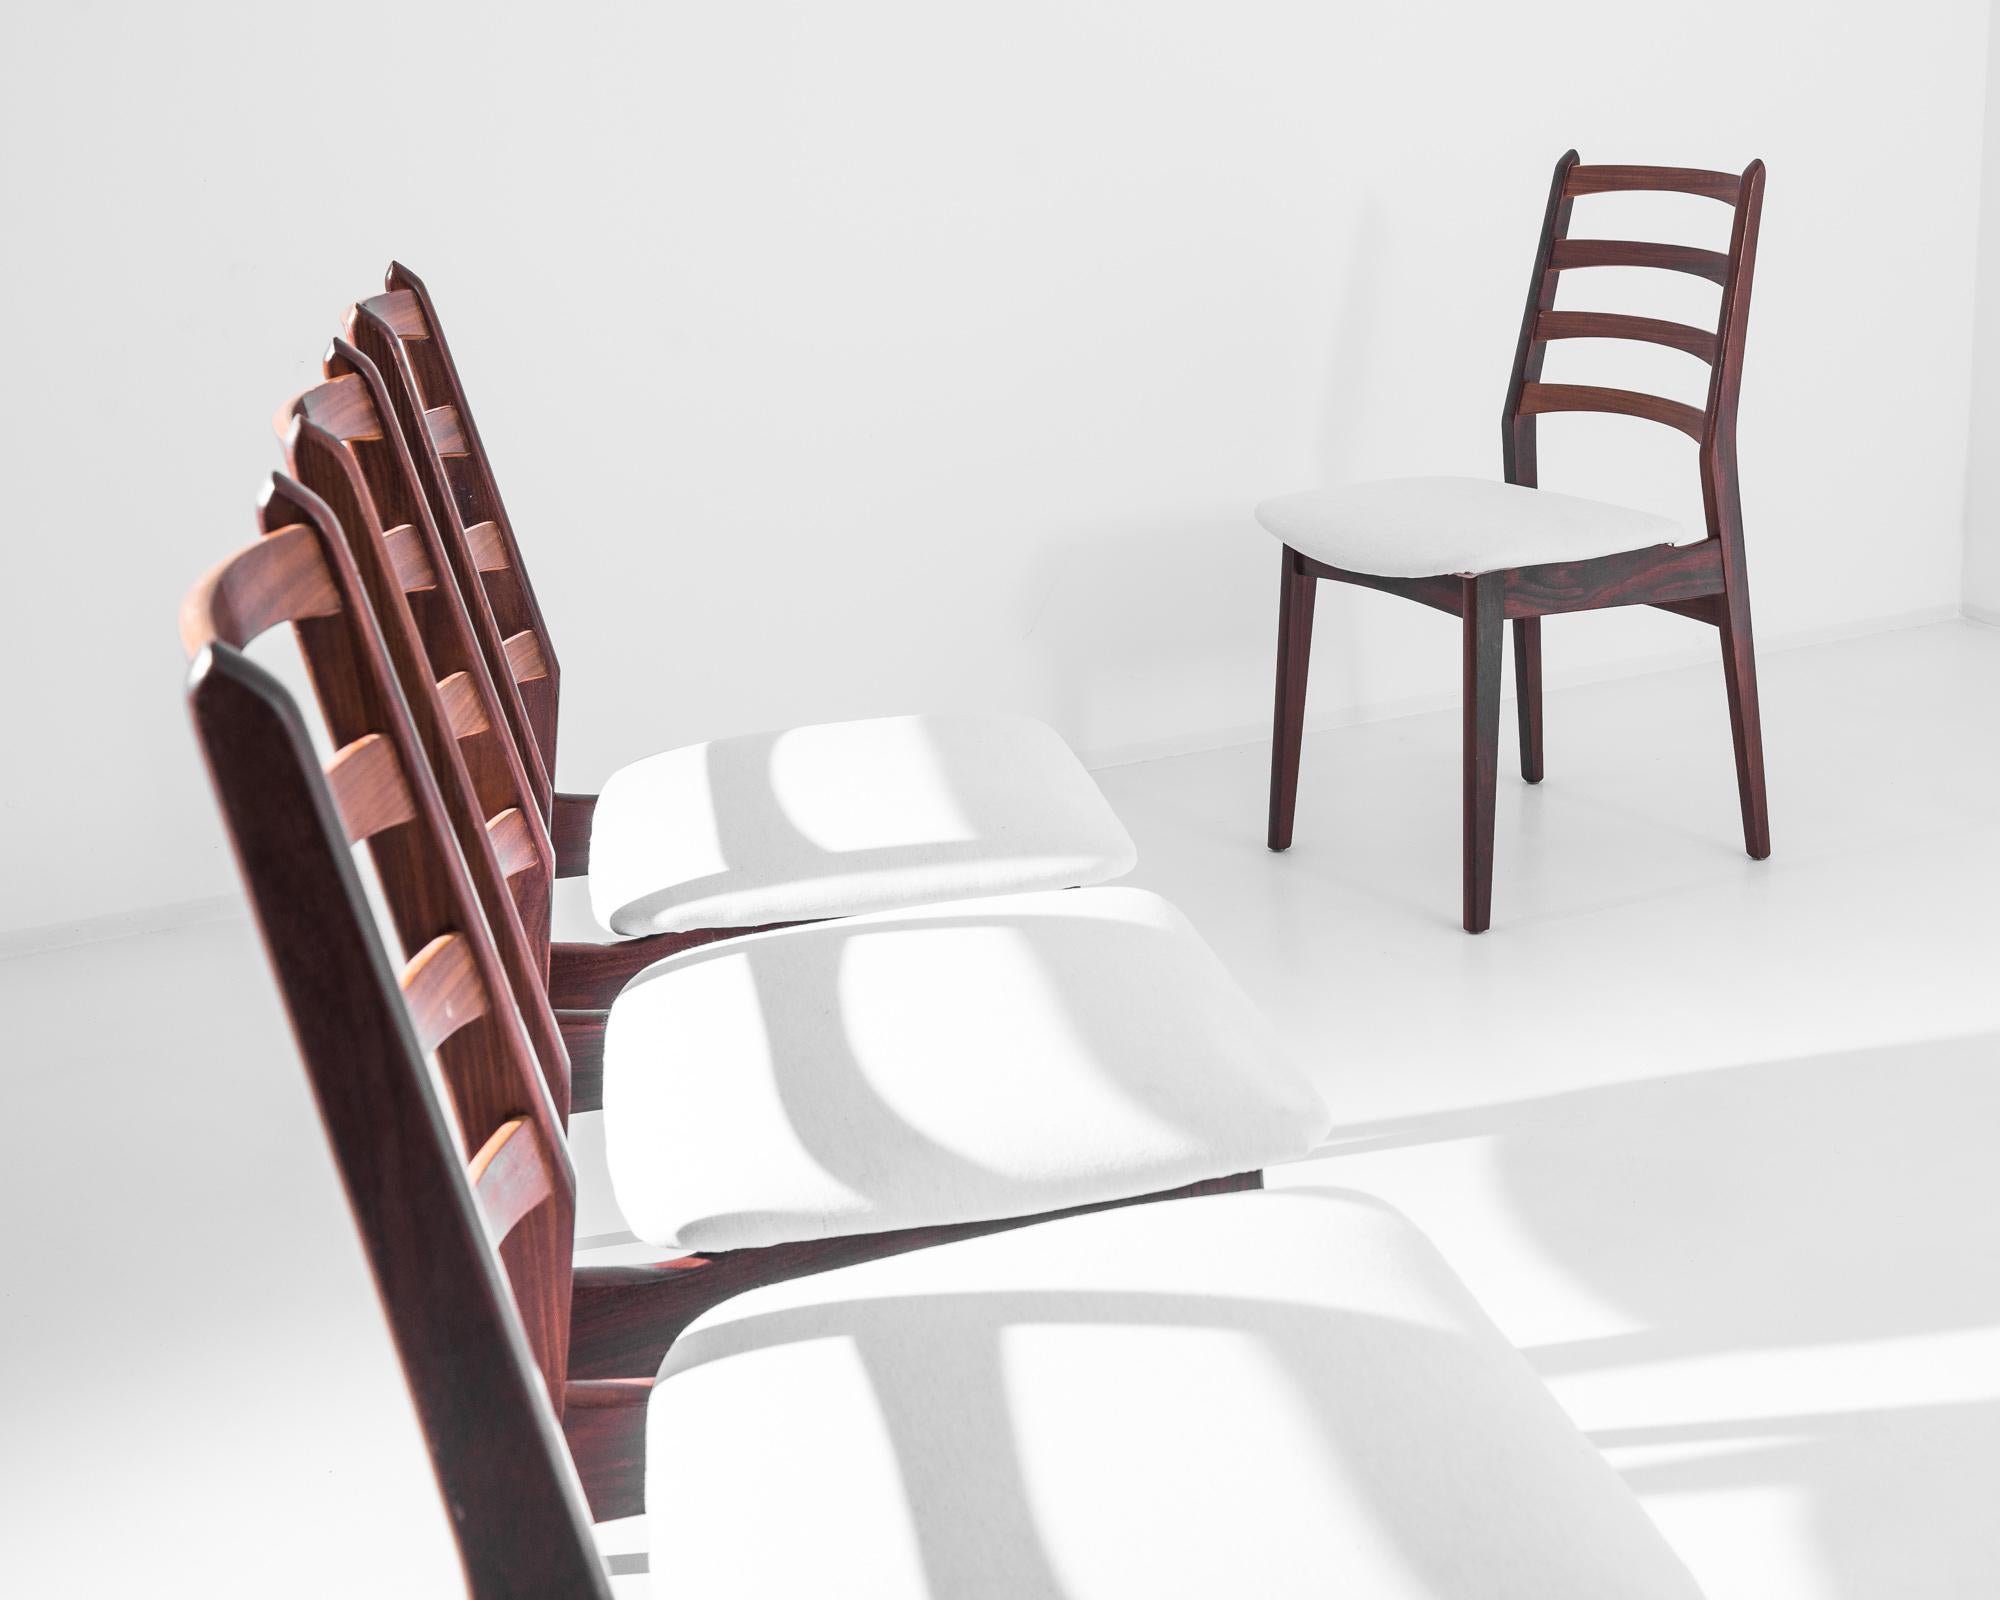 Wir stellen vier dänische Teakholzstühle aus den 1960er Jahren vor, die die Essenz des skandinavischen Designs verkörpern - schlicht, schlank und äußerst stilvoll. Diese Stühle zeichnen sich durch ein reiches, warmes Teakholzgestell mit fließenden